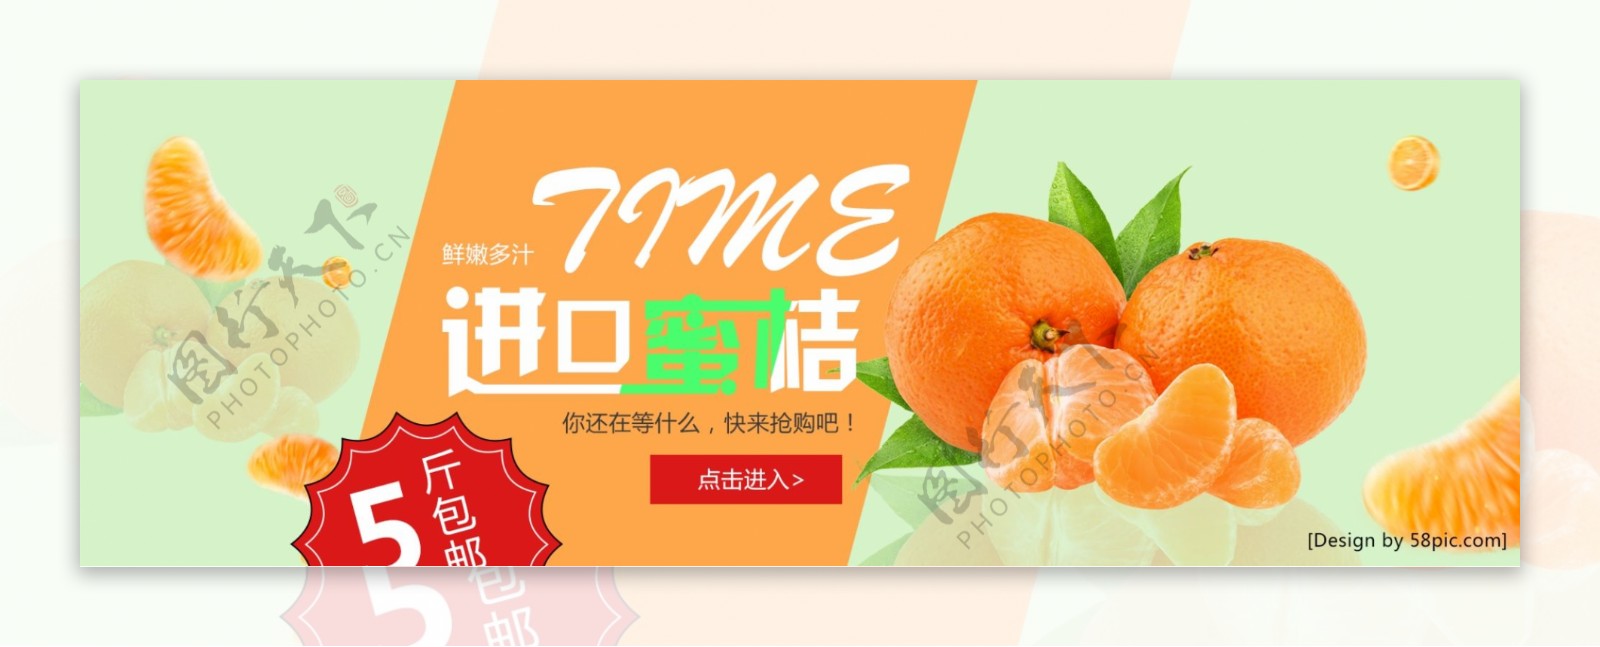 橙色时尚水果进口蜜桔电商海报banner